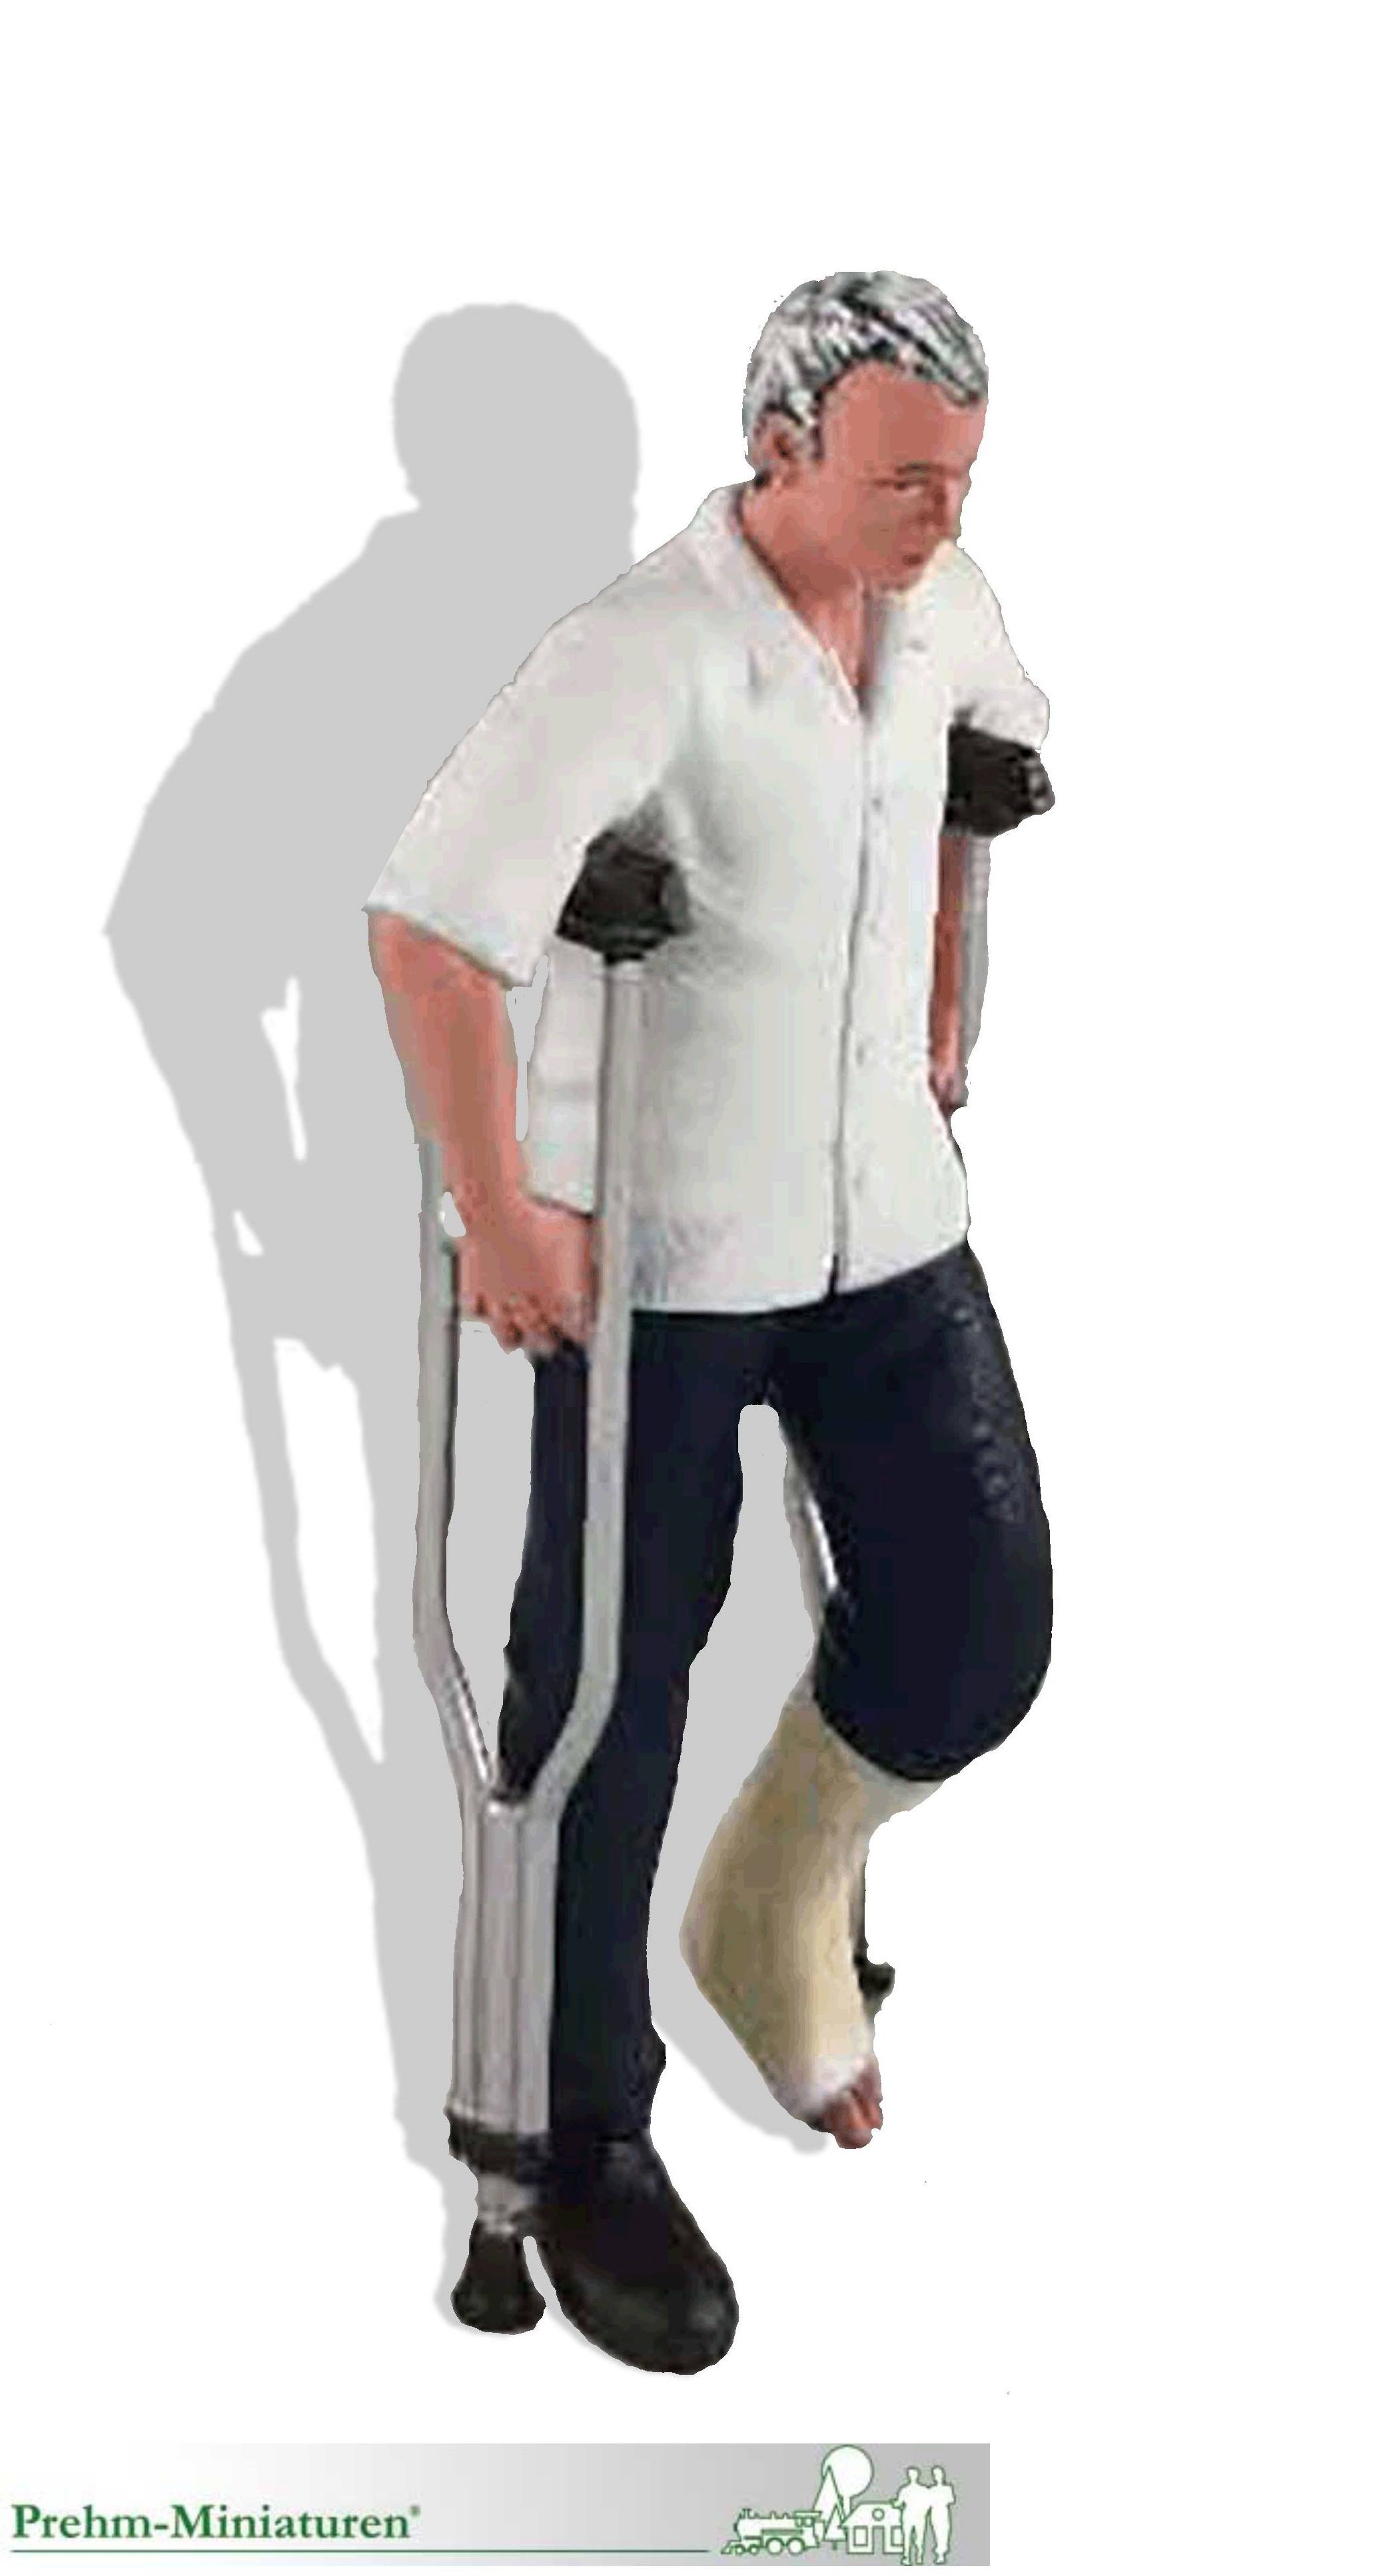 Mann mit gebrochenem Bein auf Krcken - Art. Nr. 500603 - Neuheit Prehm-Miniaturen 2021